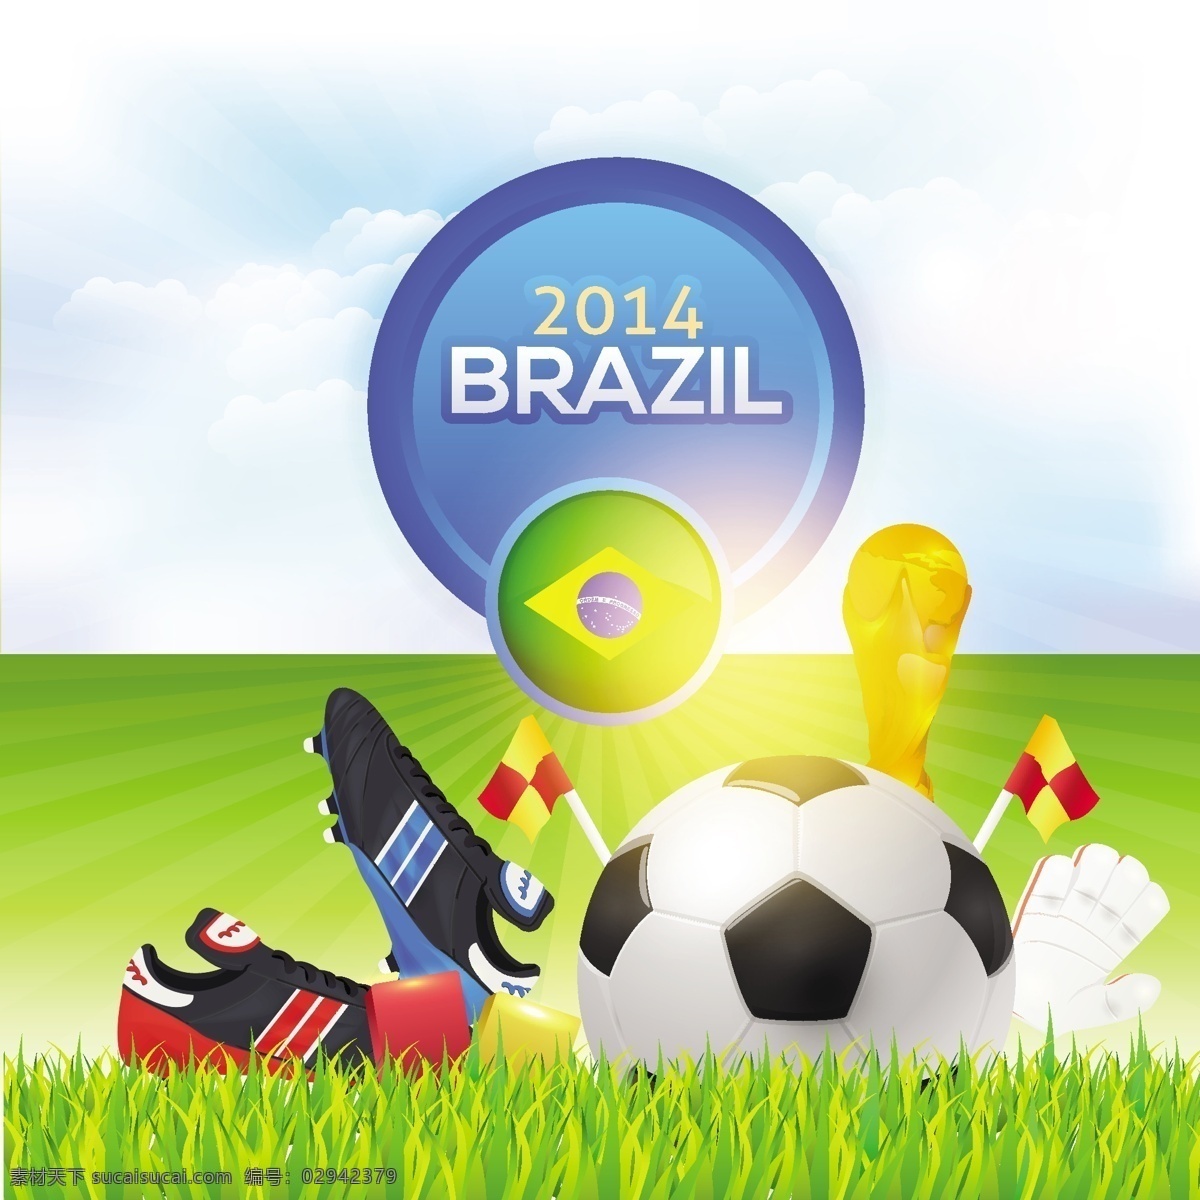 2014 巴西 世界杯 用品 背景 足球 球鞋 标志 海报 草坪 体育运动 生活百科 矢量素材 白色